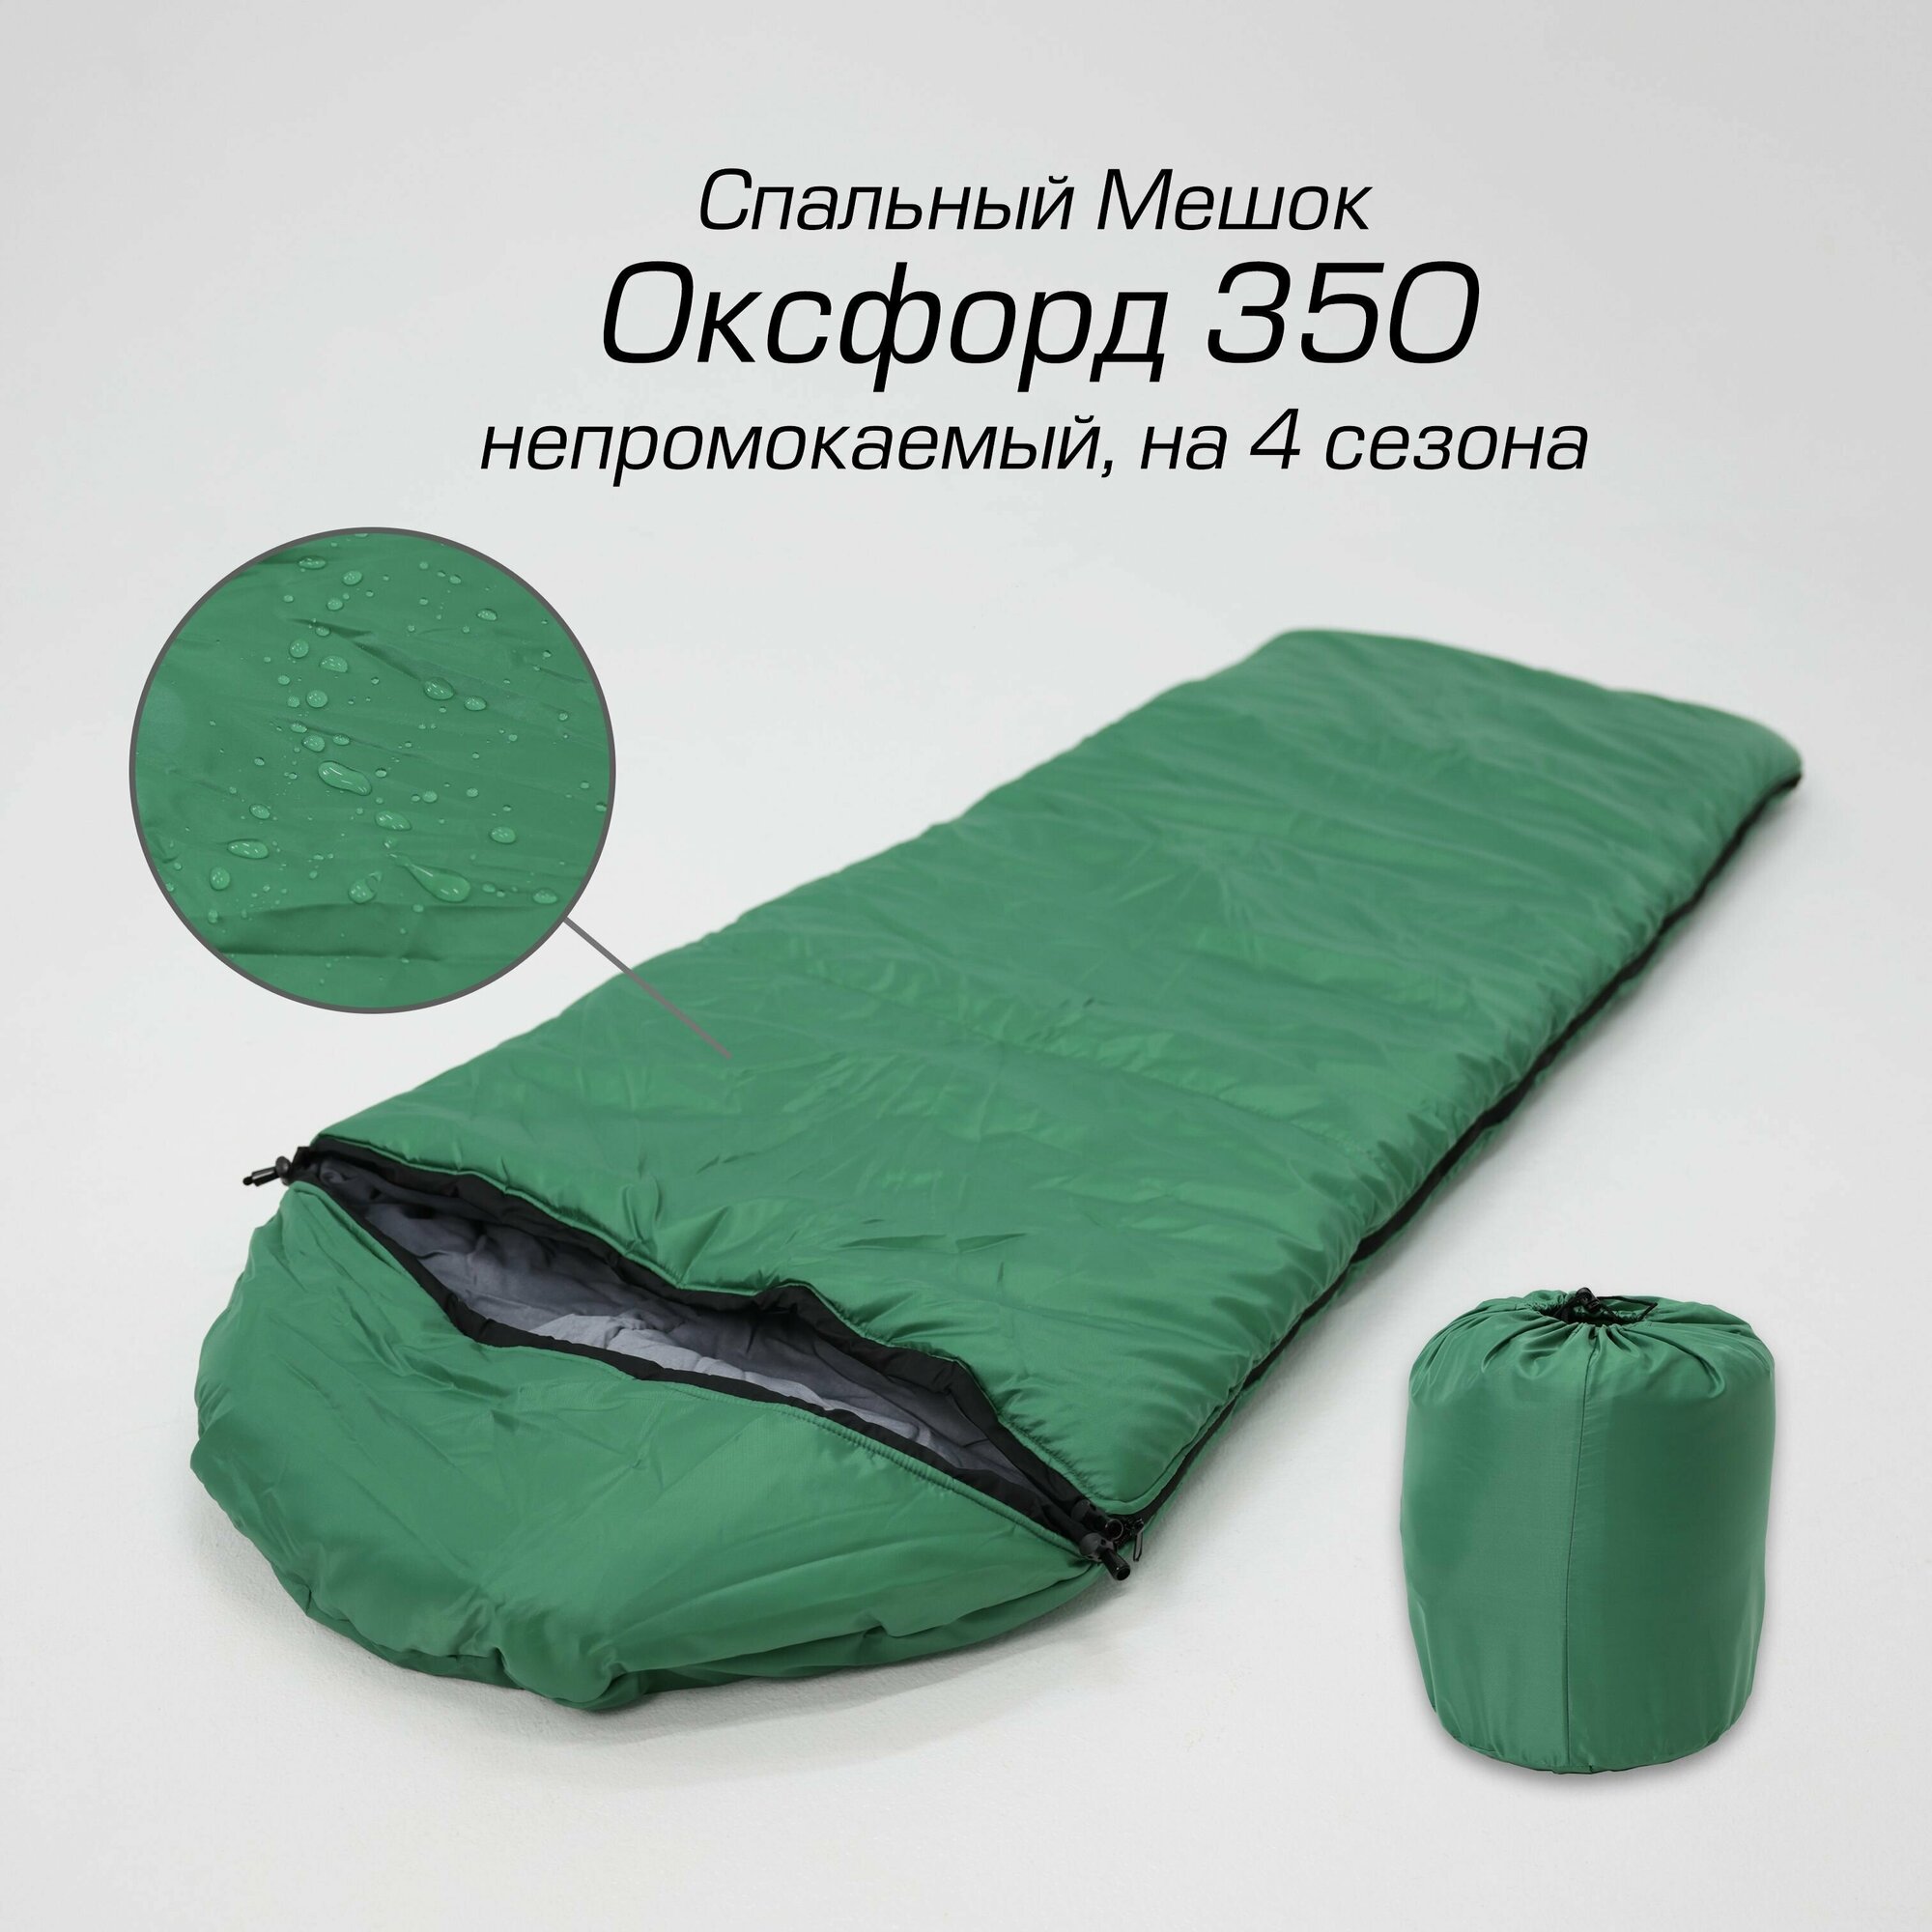 Спальный мешок Оксфорд 350 непромокаемый туристический c капюшоном, от -15 до +15, 215х75 см, by MAD SWAMP, спальник на 4 сезона, зеленый